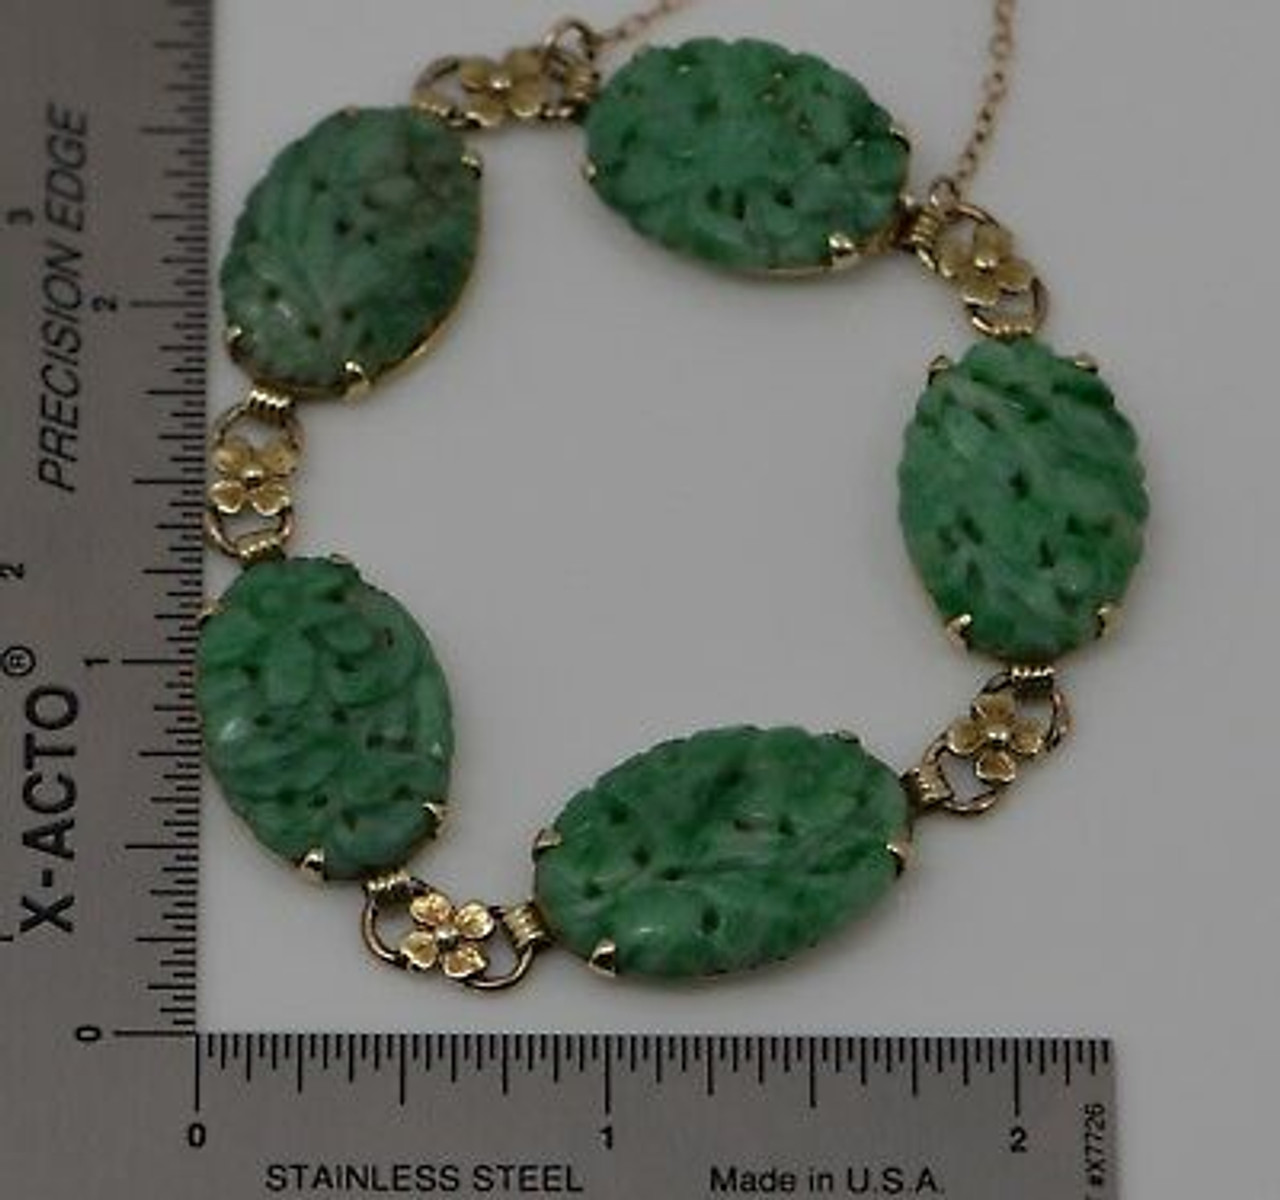 12mm Carved Jade Bangle Bracelet | Ross-Simons